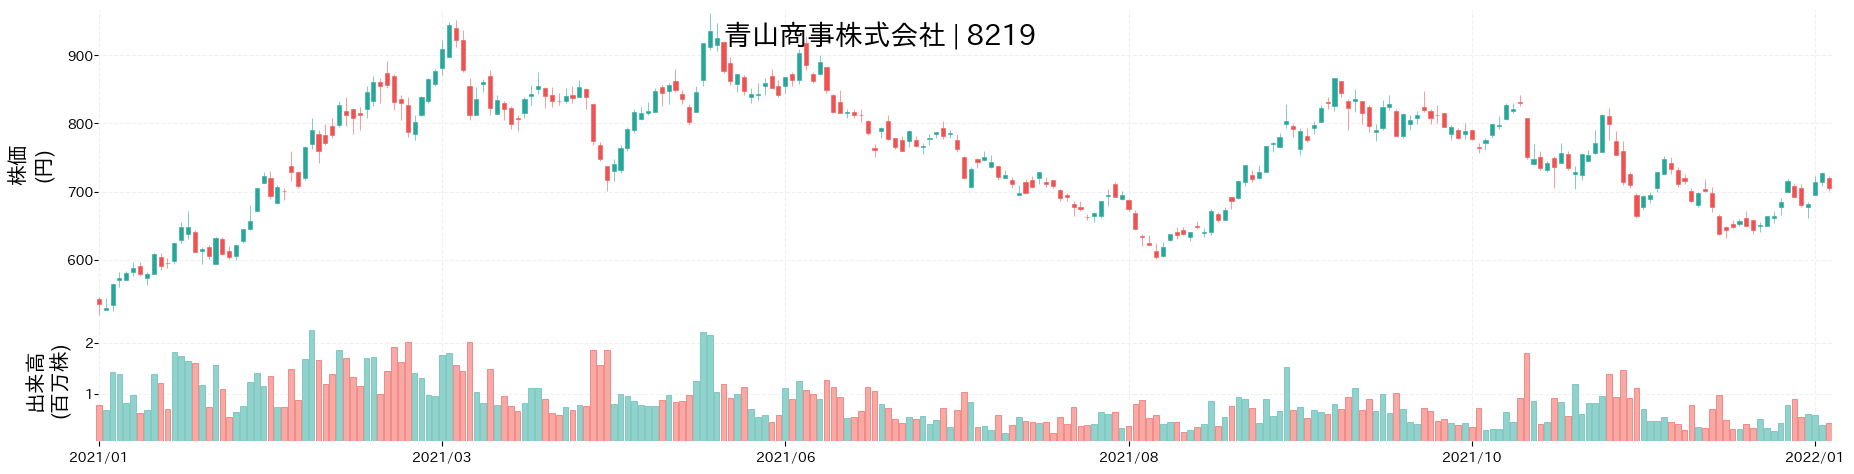 青山商事の株価推移(2021)